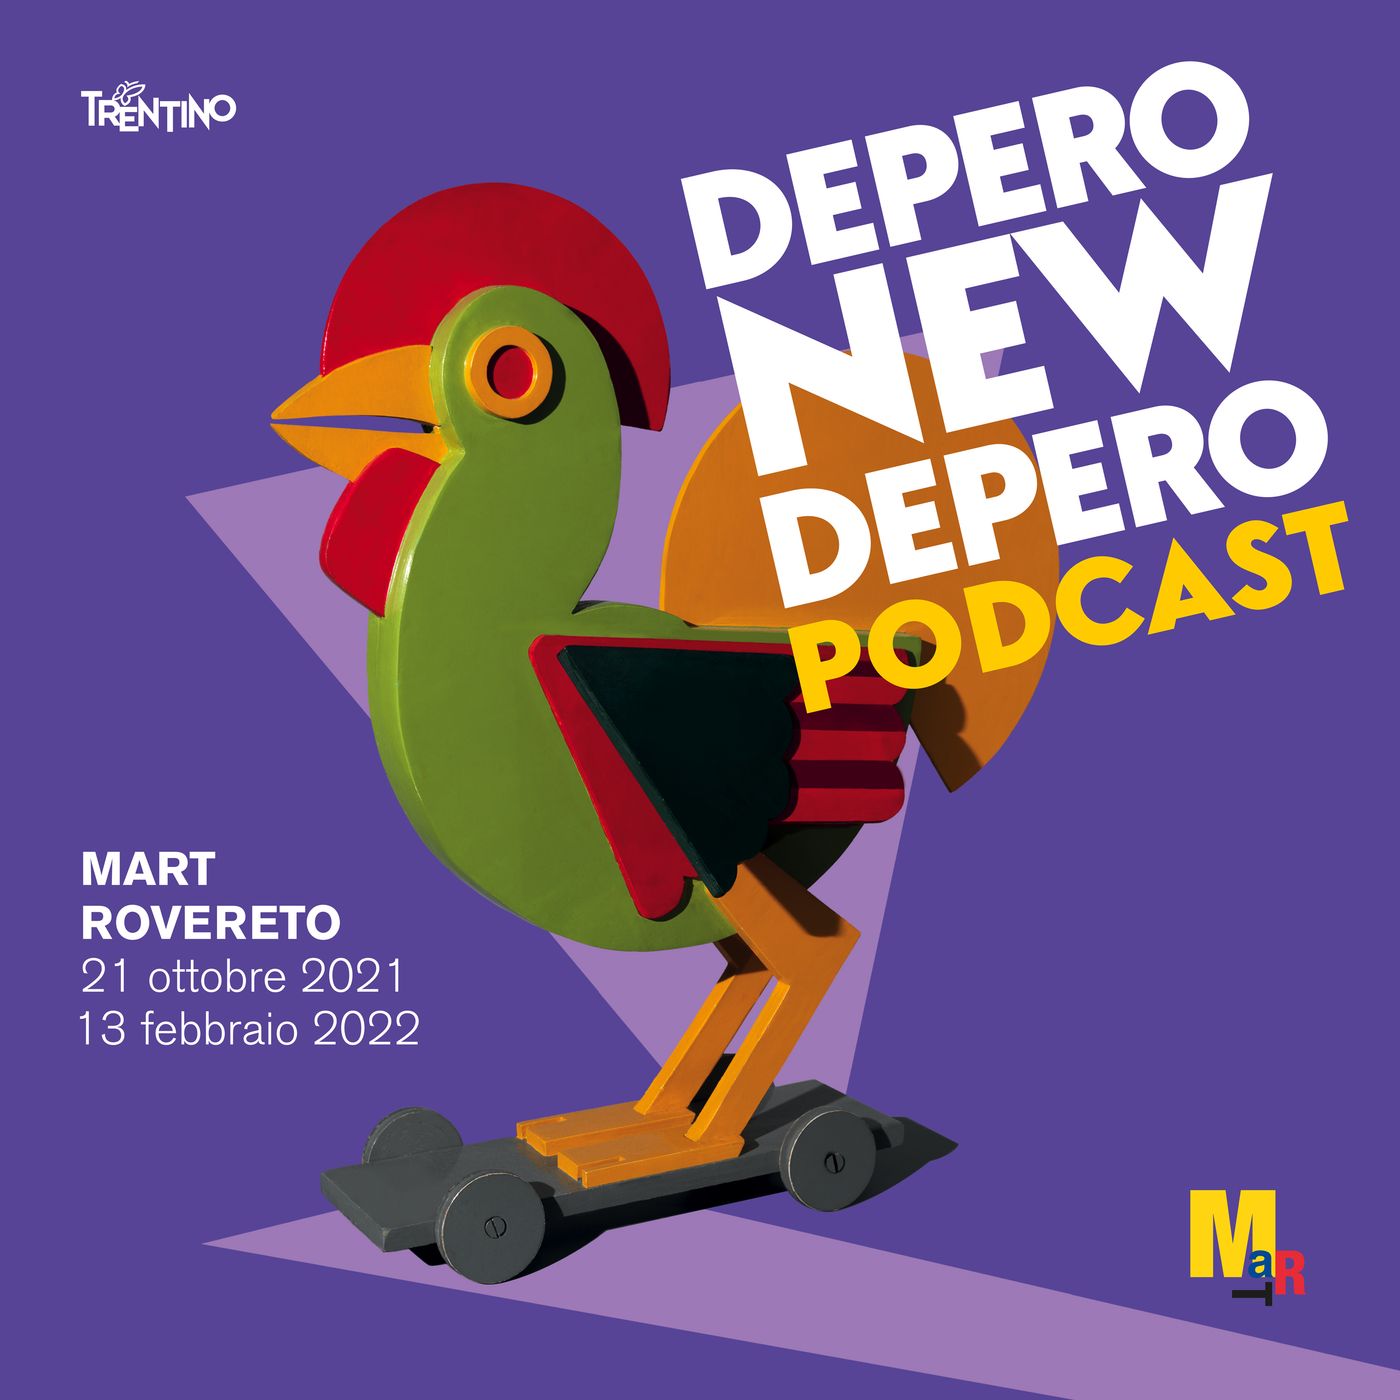 Depero new Depero - Il racconto di una mostra